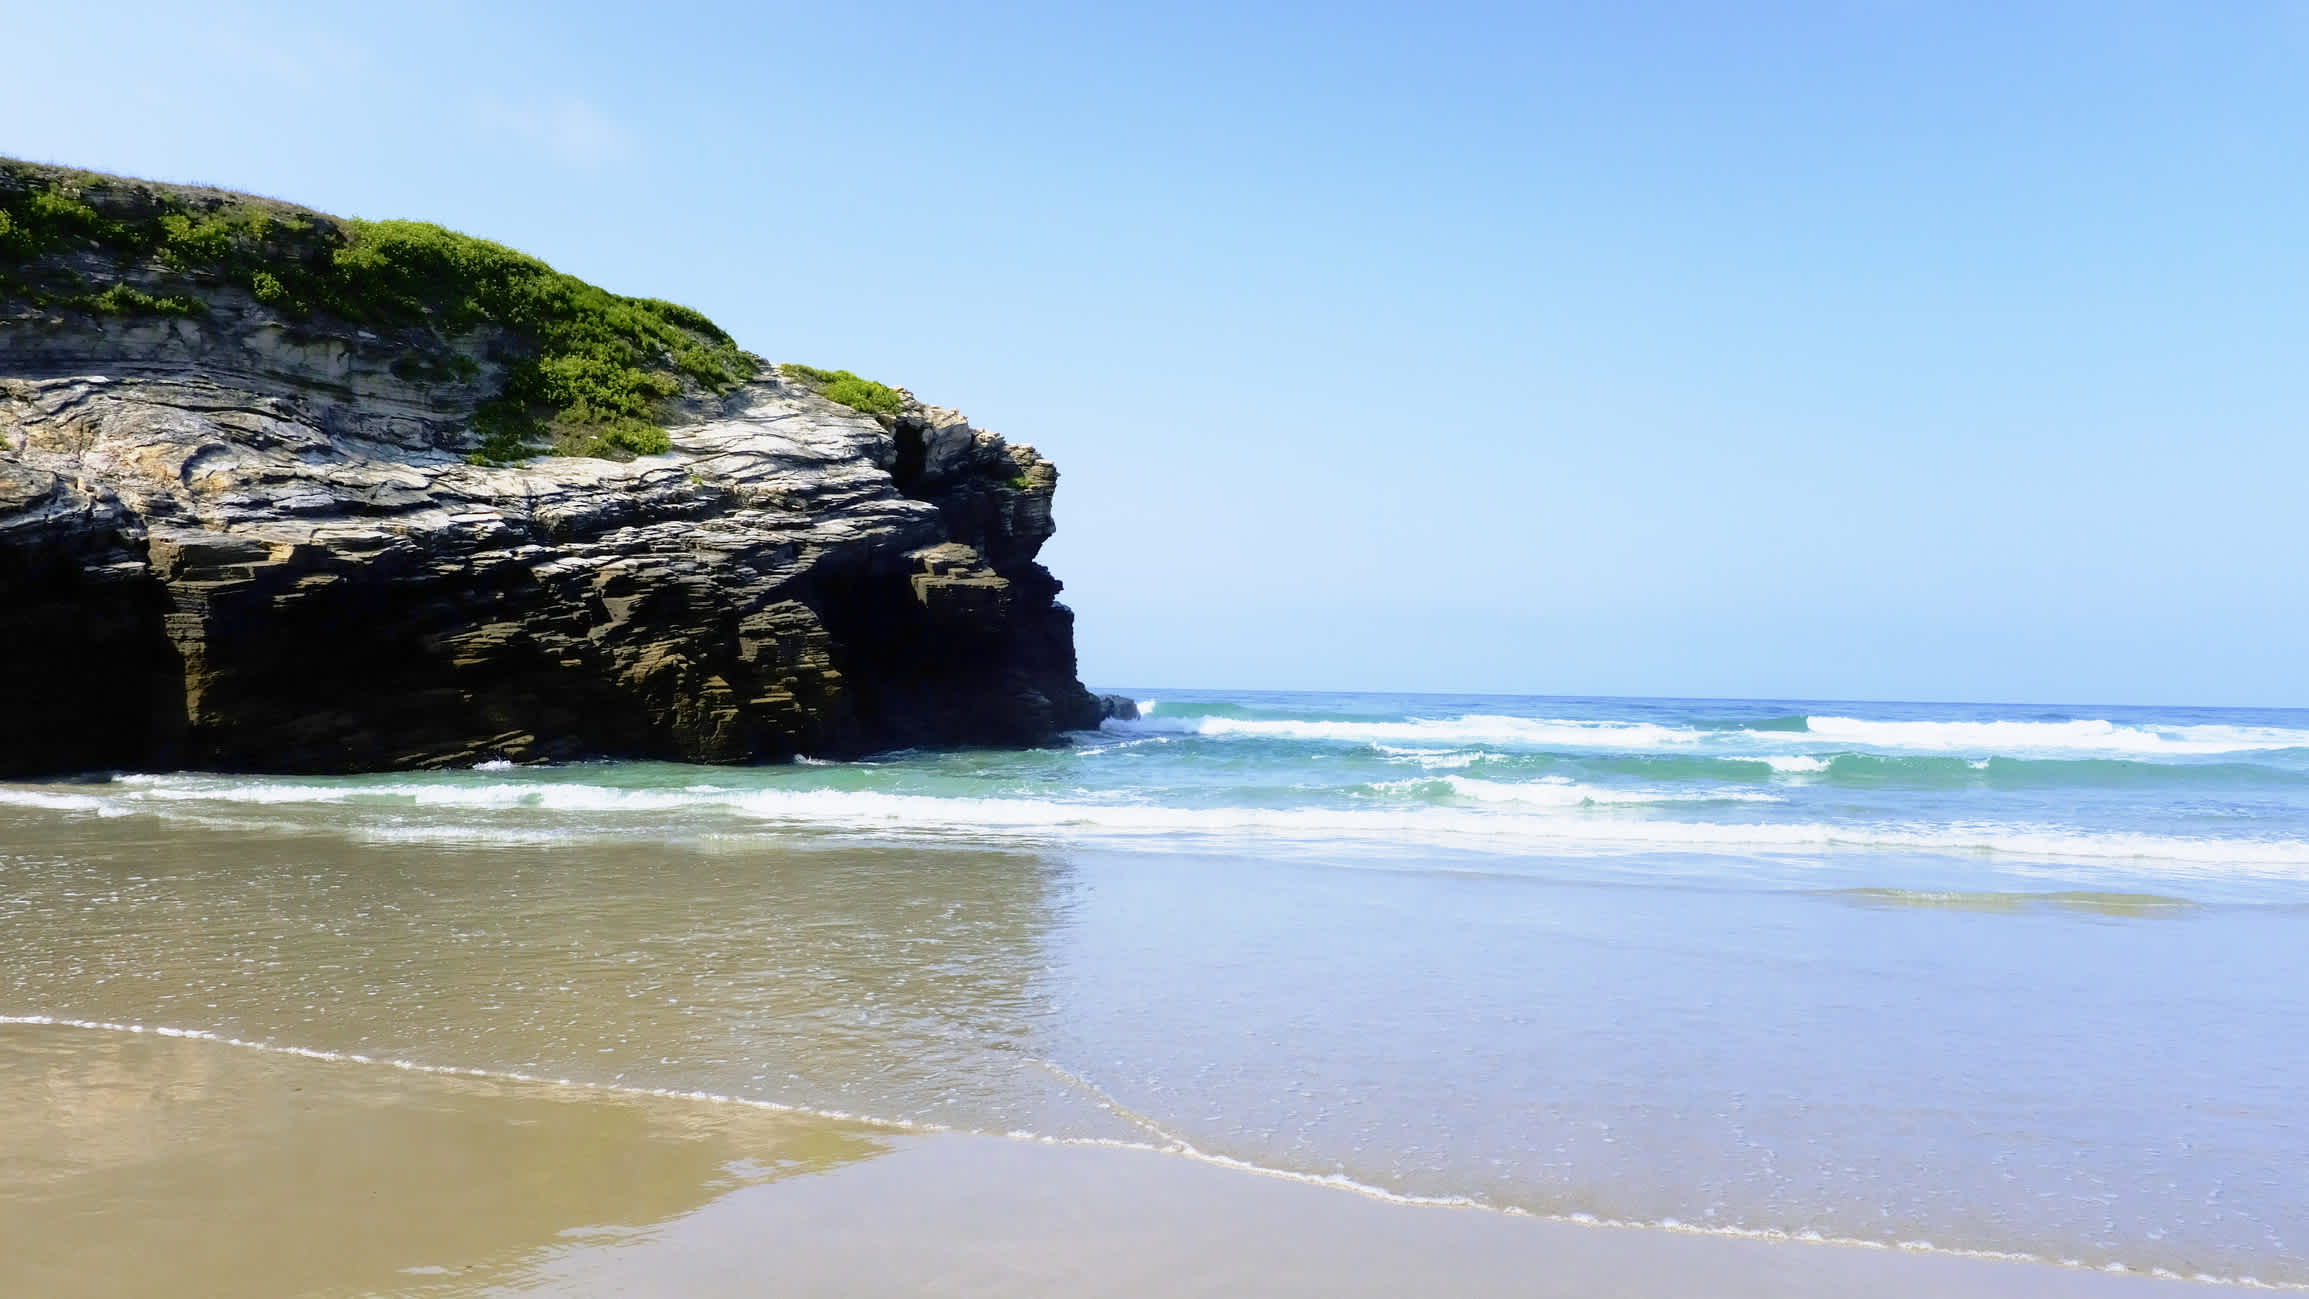 Plage de sable avec un grand rocher au bord de la mer, Plage de Figueiras, Galicie en Espagne